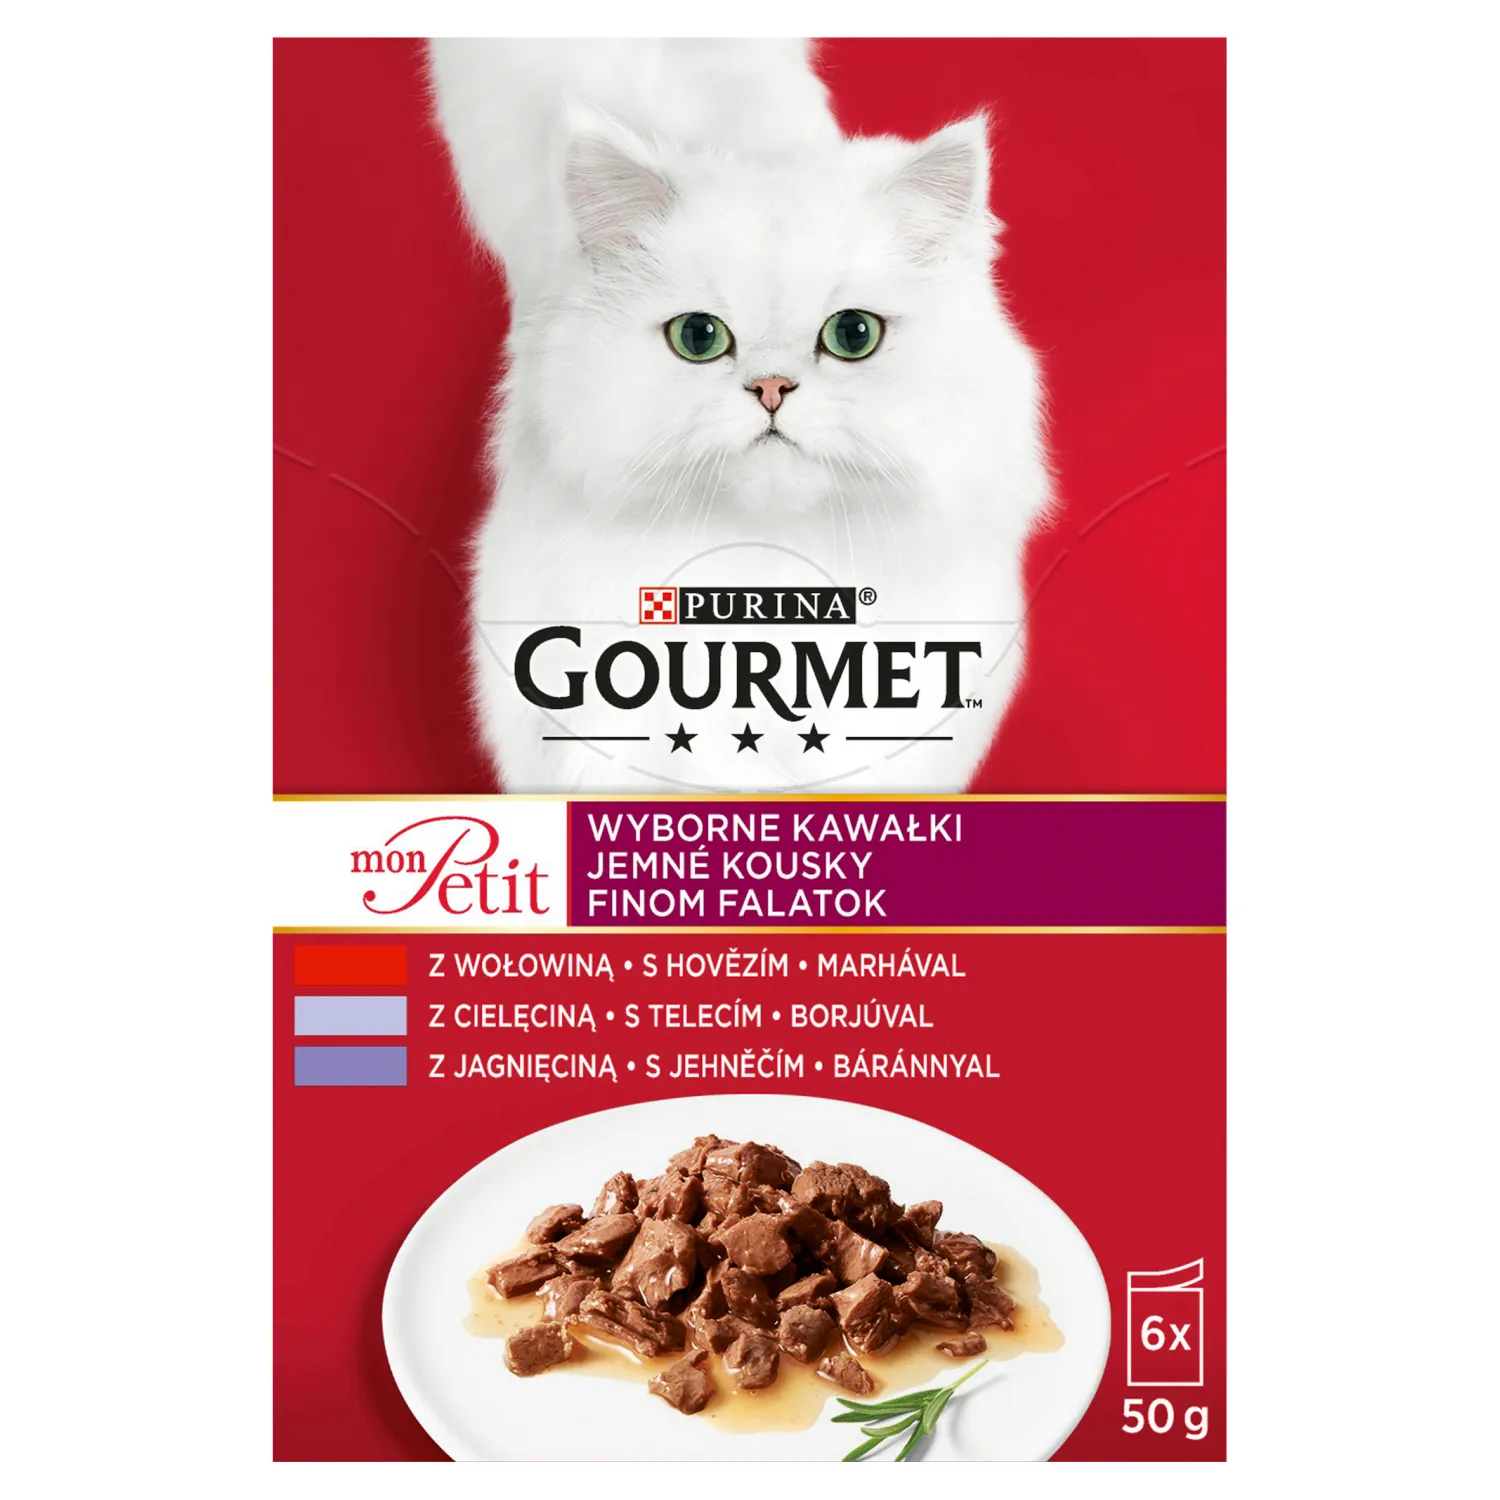 GOURMET Mon Petit wyborne kawałki z wołowiną, z cielęciną, z jagnięciną dla kotów, 6x50 g